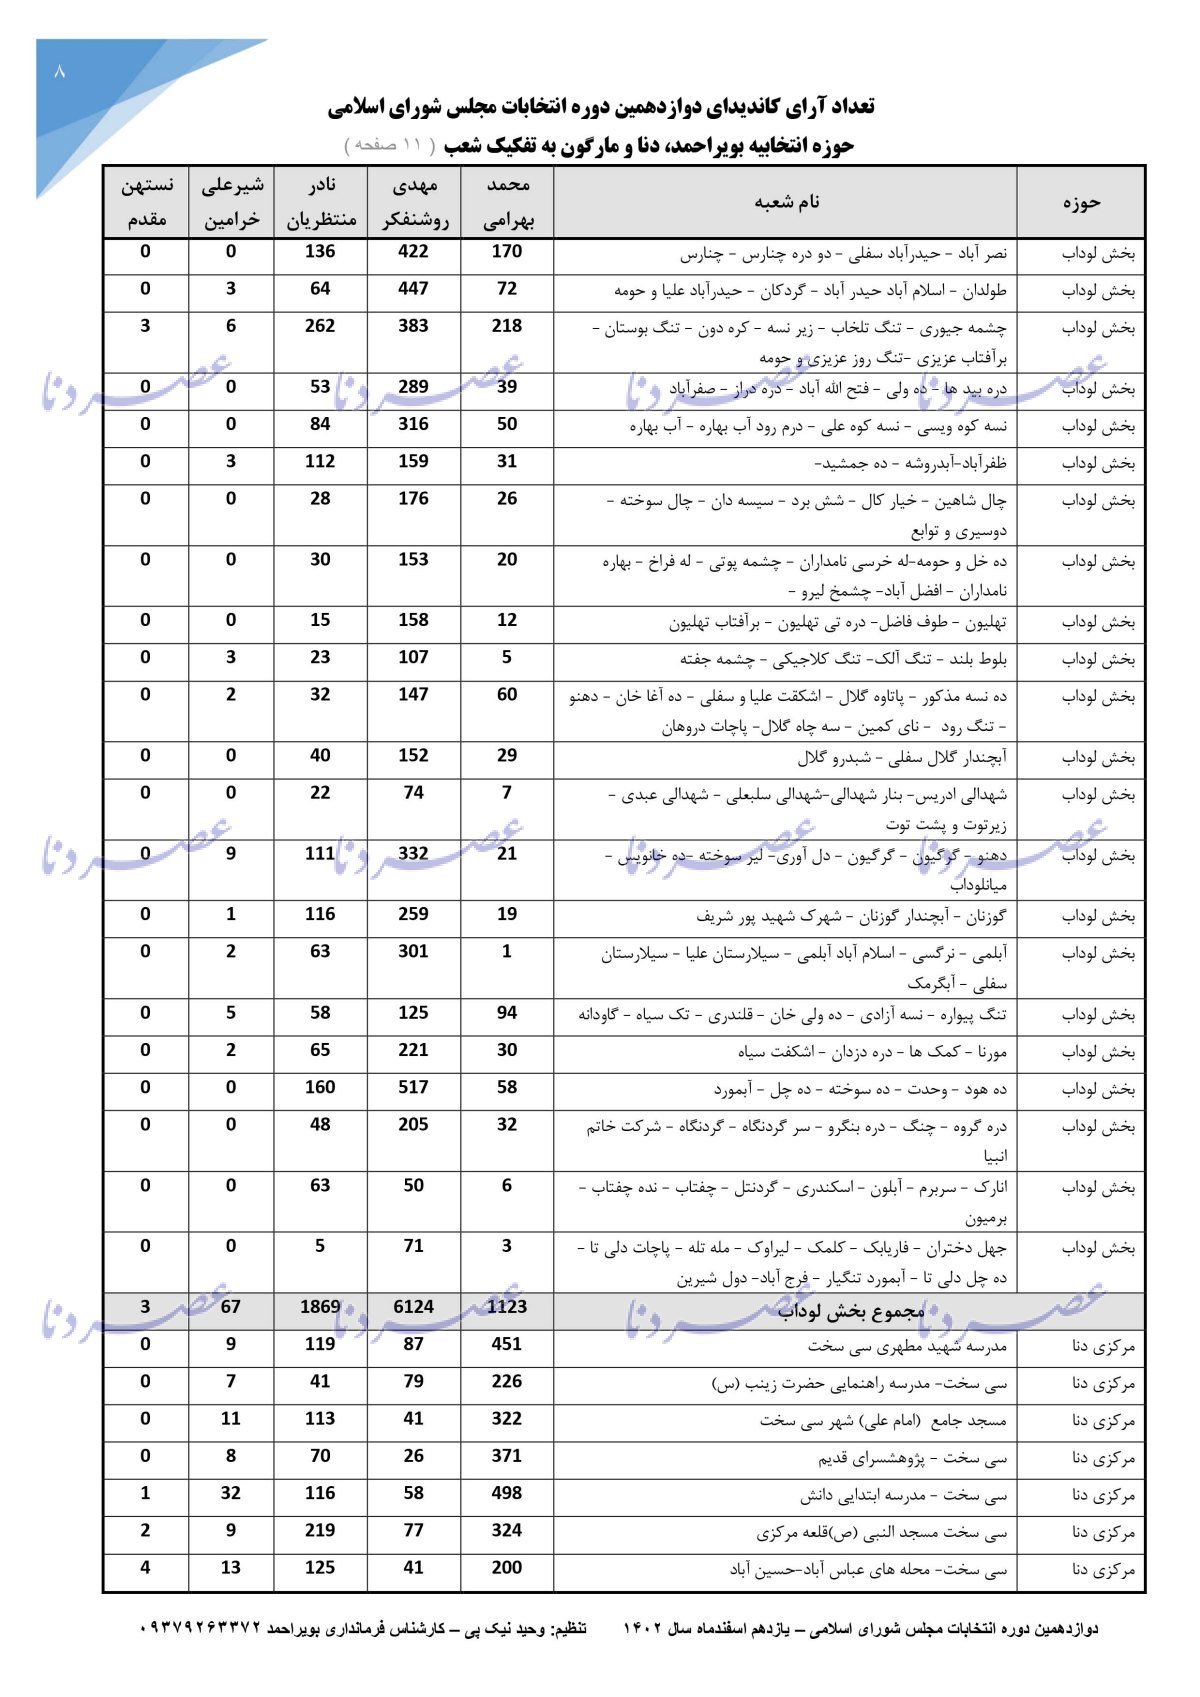 جزئیات آرای کاندیداهای انتخابات مجلس حوزه بویراحمد، دنا و مارگون به تفکیک شعب